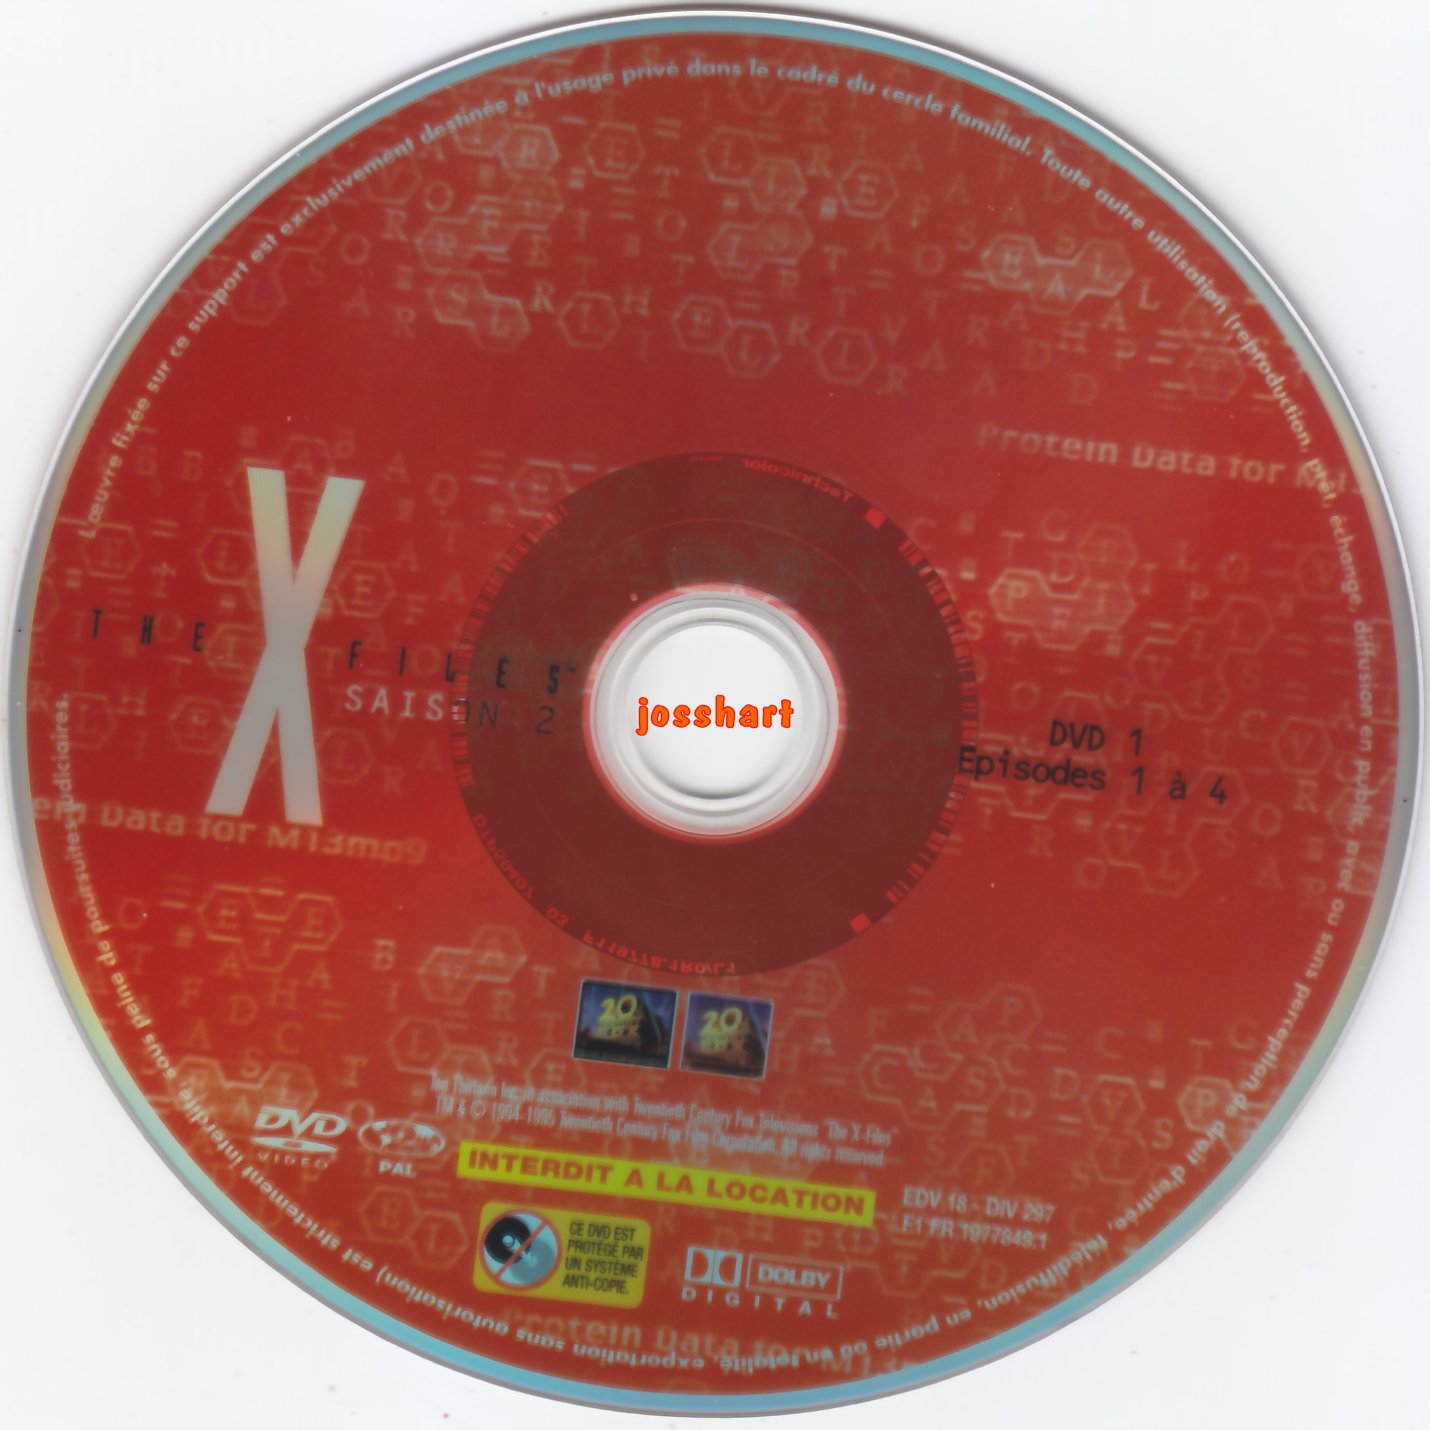 The X Files Saison 2 DVD 1 v2